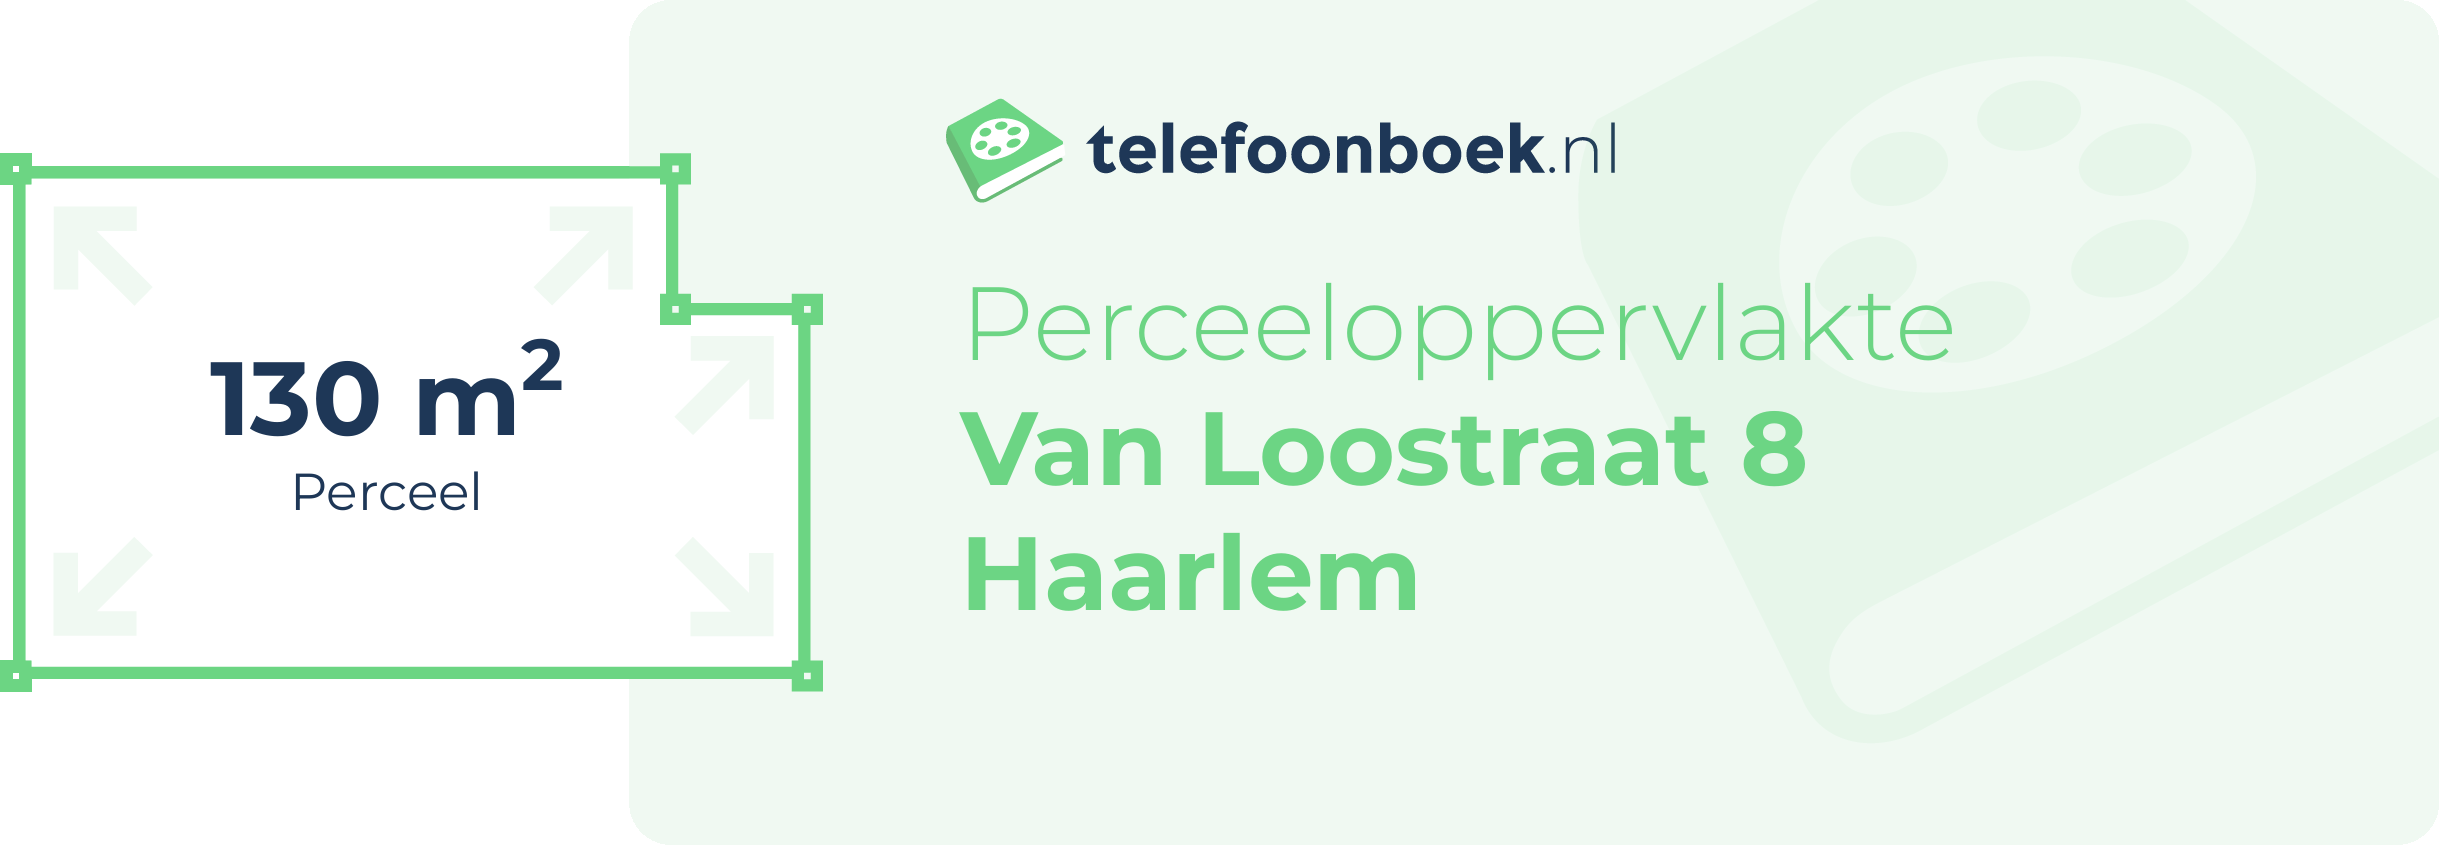 Perceeloppervlakte Van Loostraat 8 Haarlem